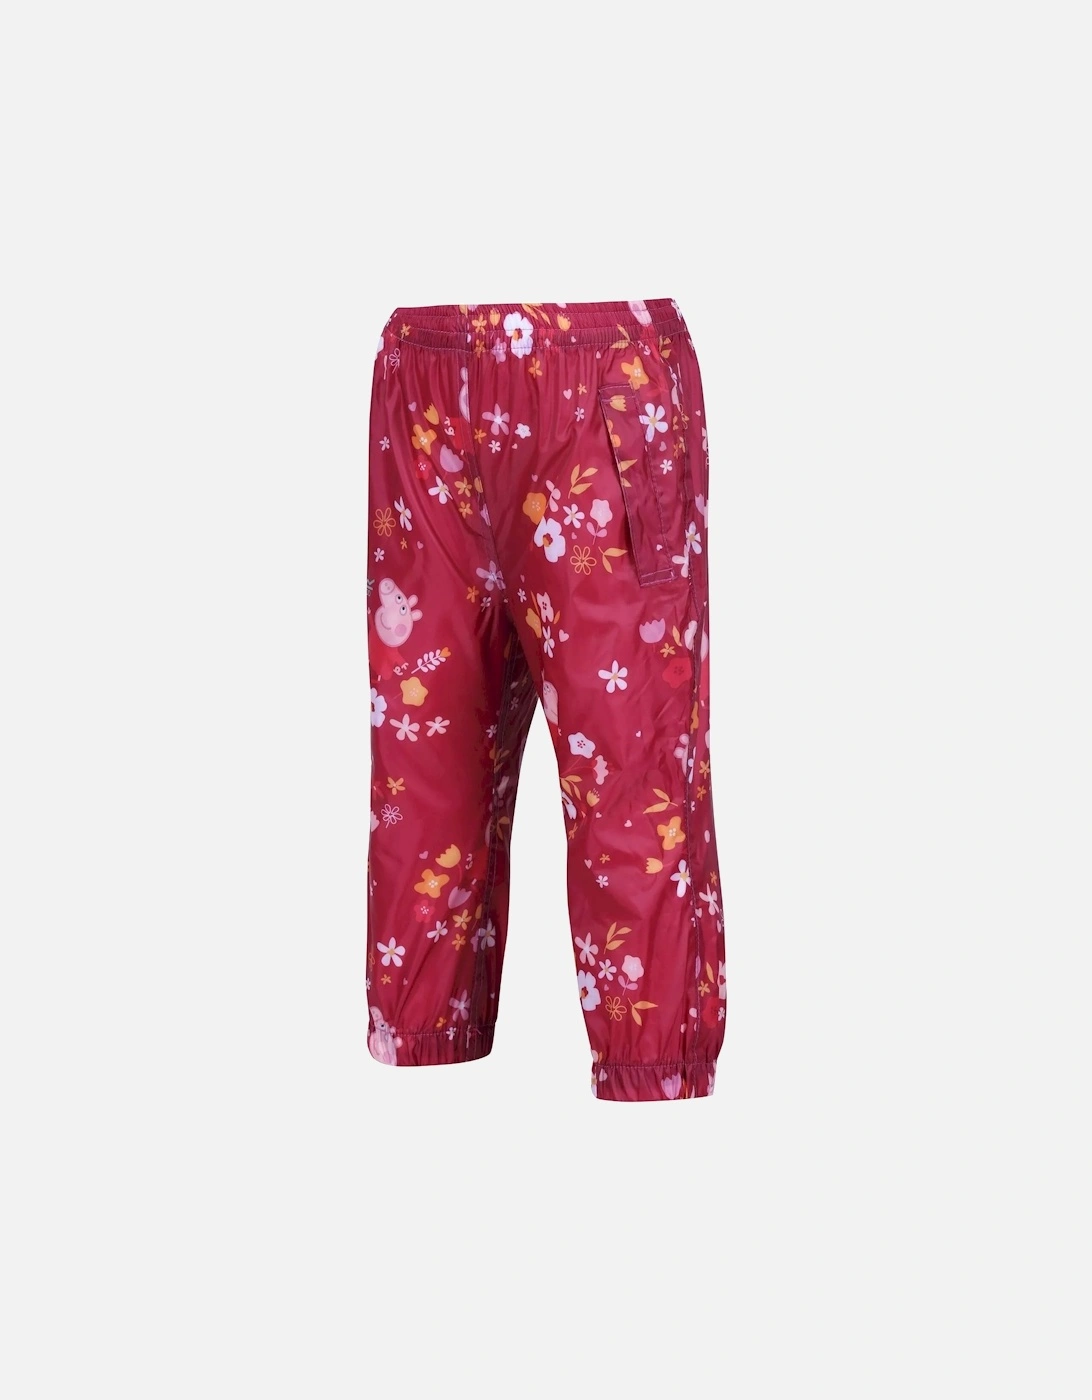 Childrens/Kids Floral Peppa Pig Packaway Waterproof Trousers